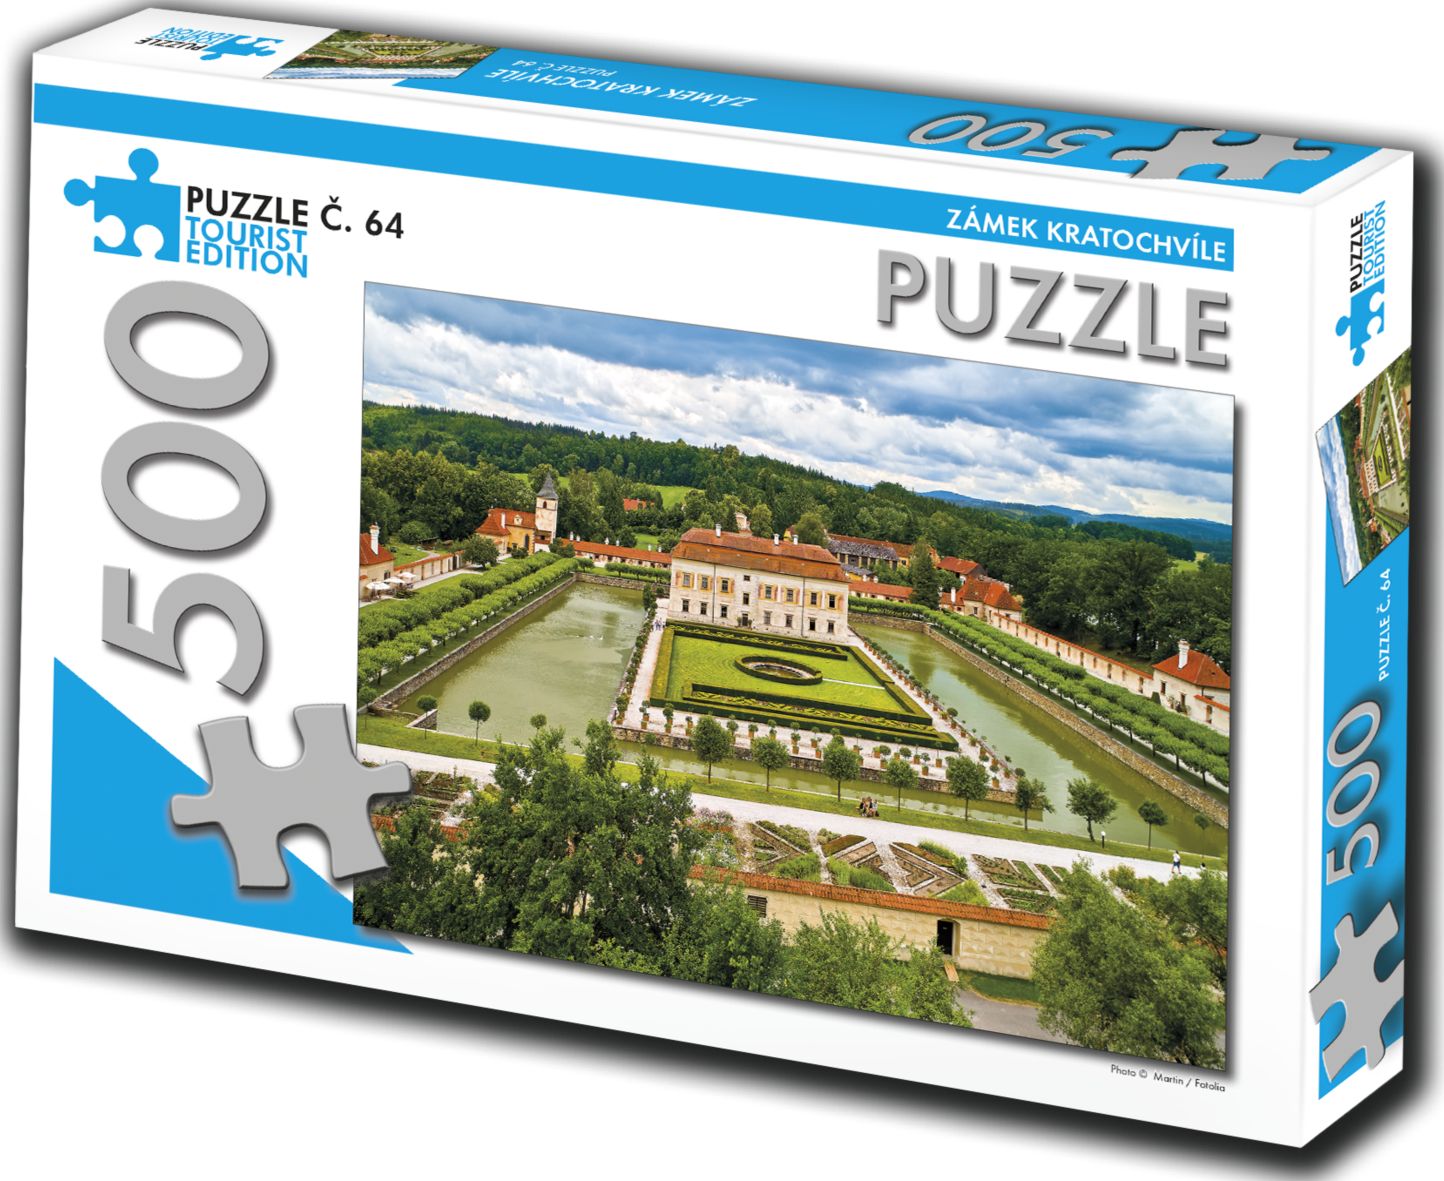 TOURIST EDITION Puzzle Zámek Kratochvíle 500 dílků (č.64) - obrázek 1